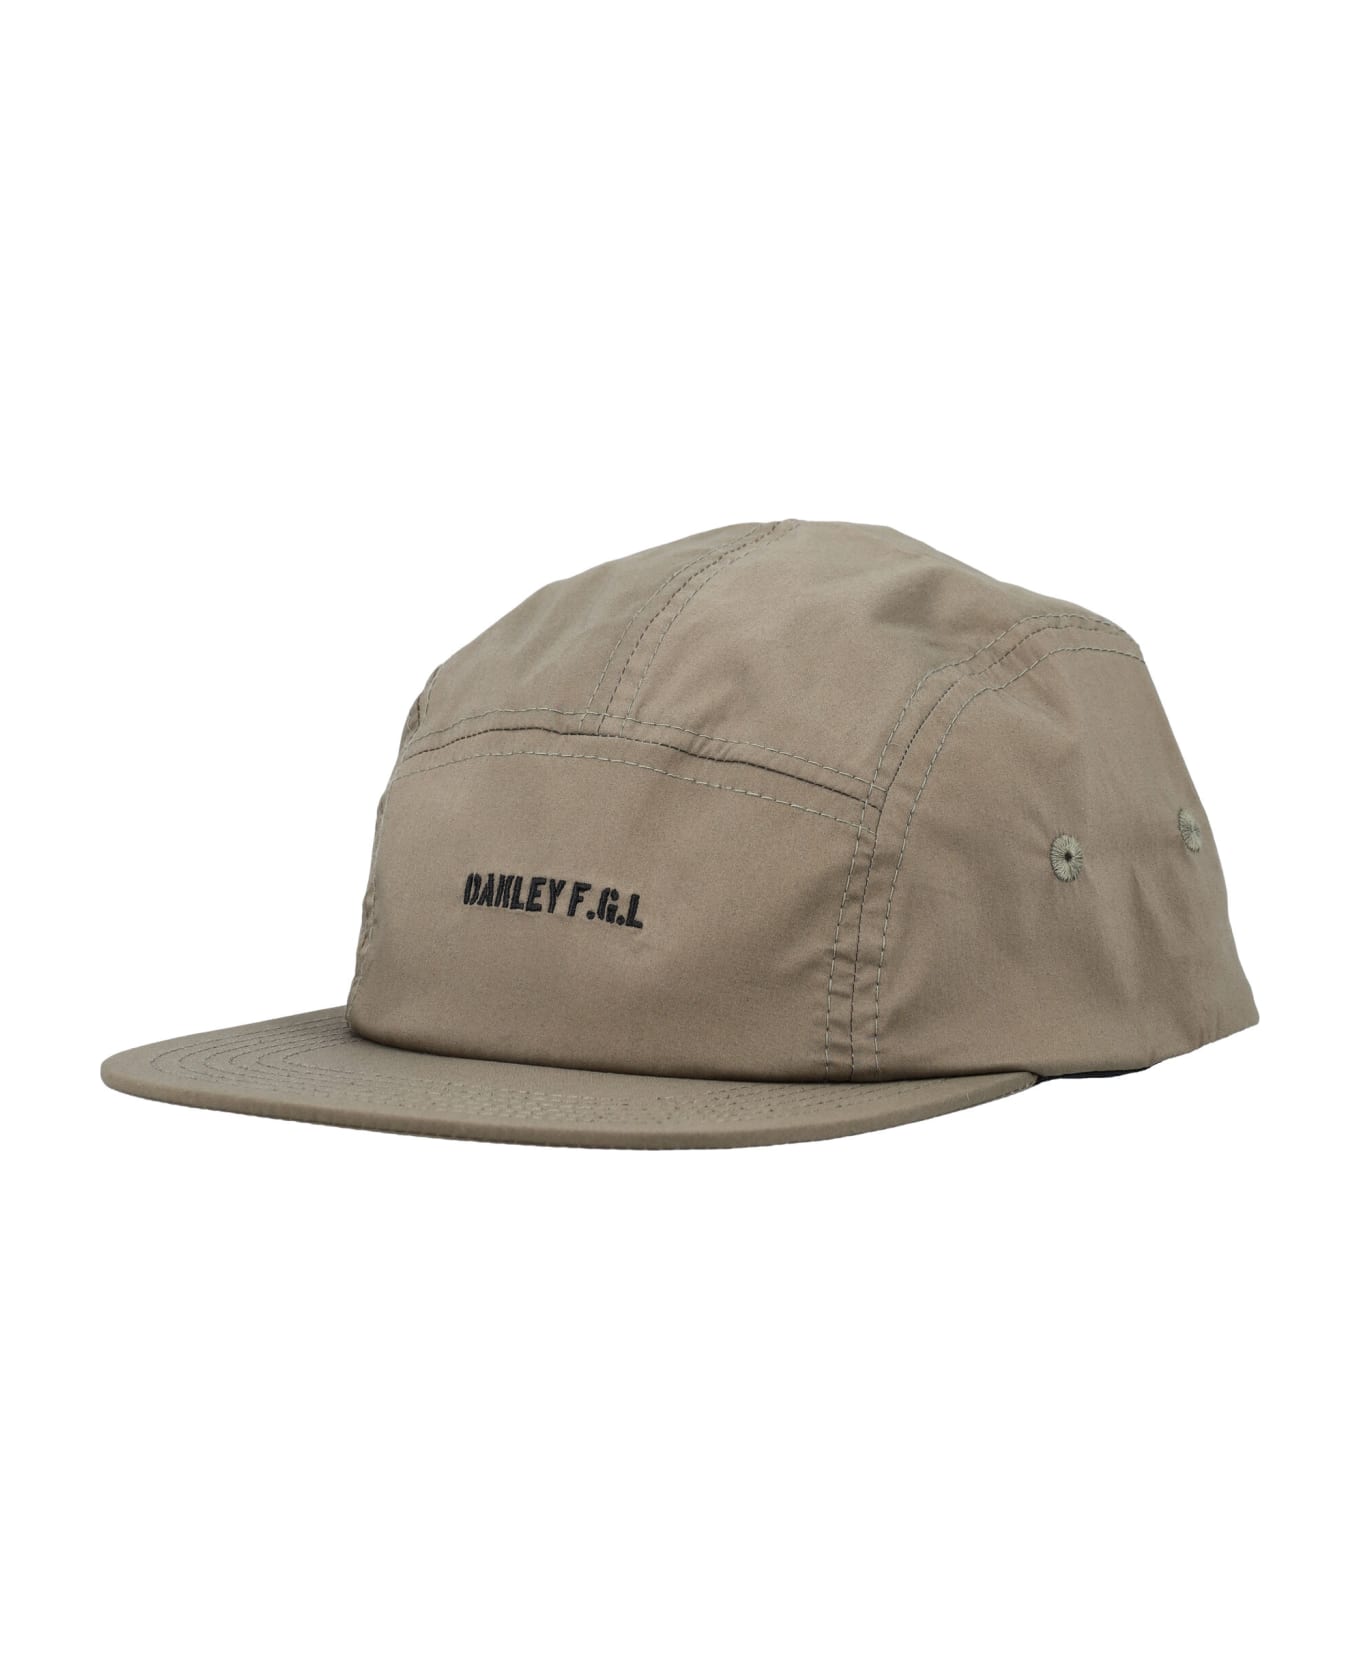 Oakley Fgl Jet Cap 24.0 - SHEET METAL 帽子